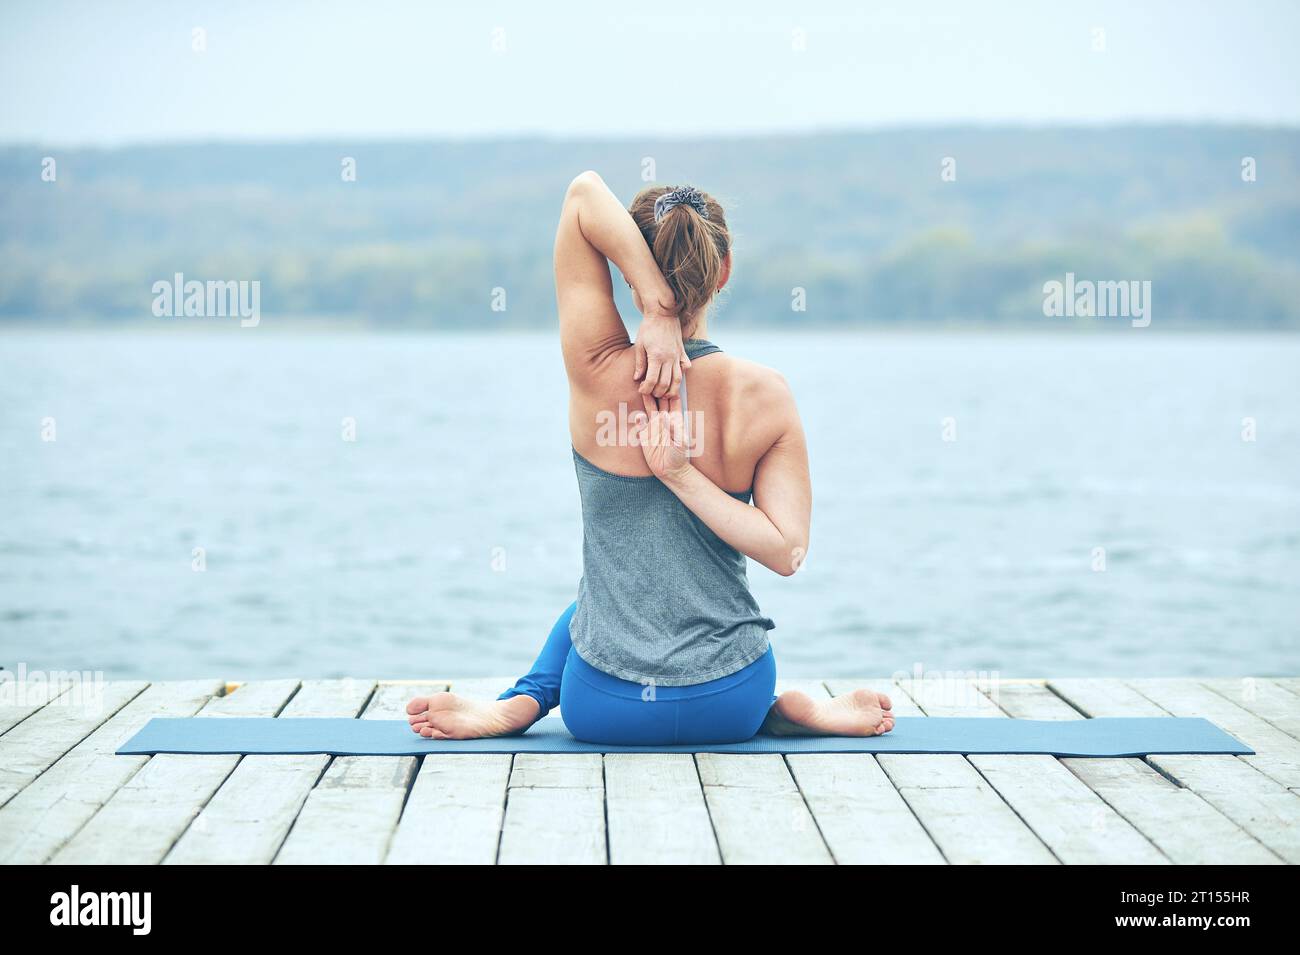 Schöne junge Frau praktiziert Yoga Asana Gomukhasana - Kuhgesicht Pose auf der Holzterrasse in der Nähe des Sees. Stockfoto